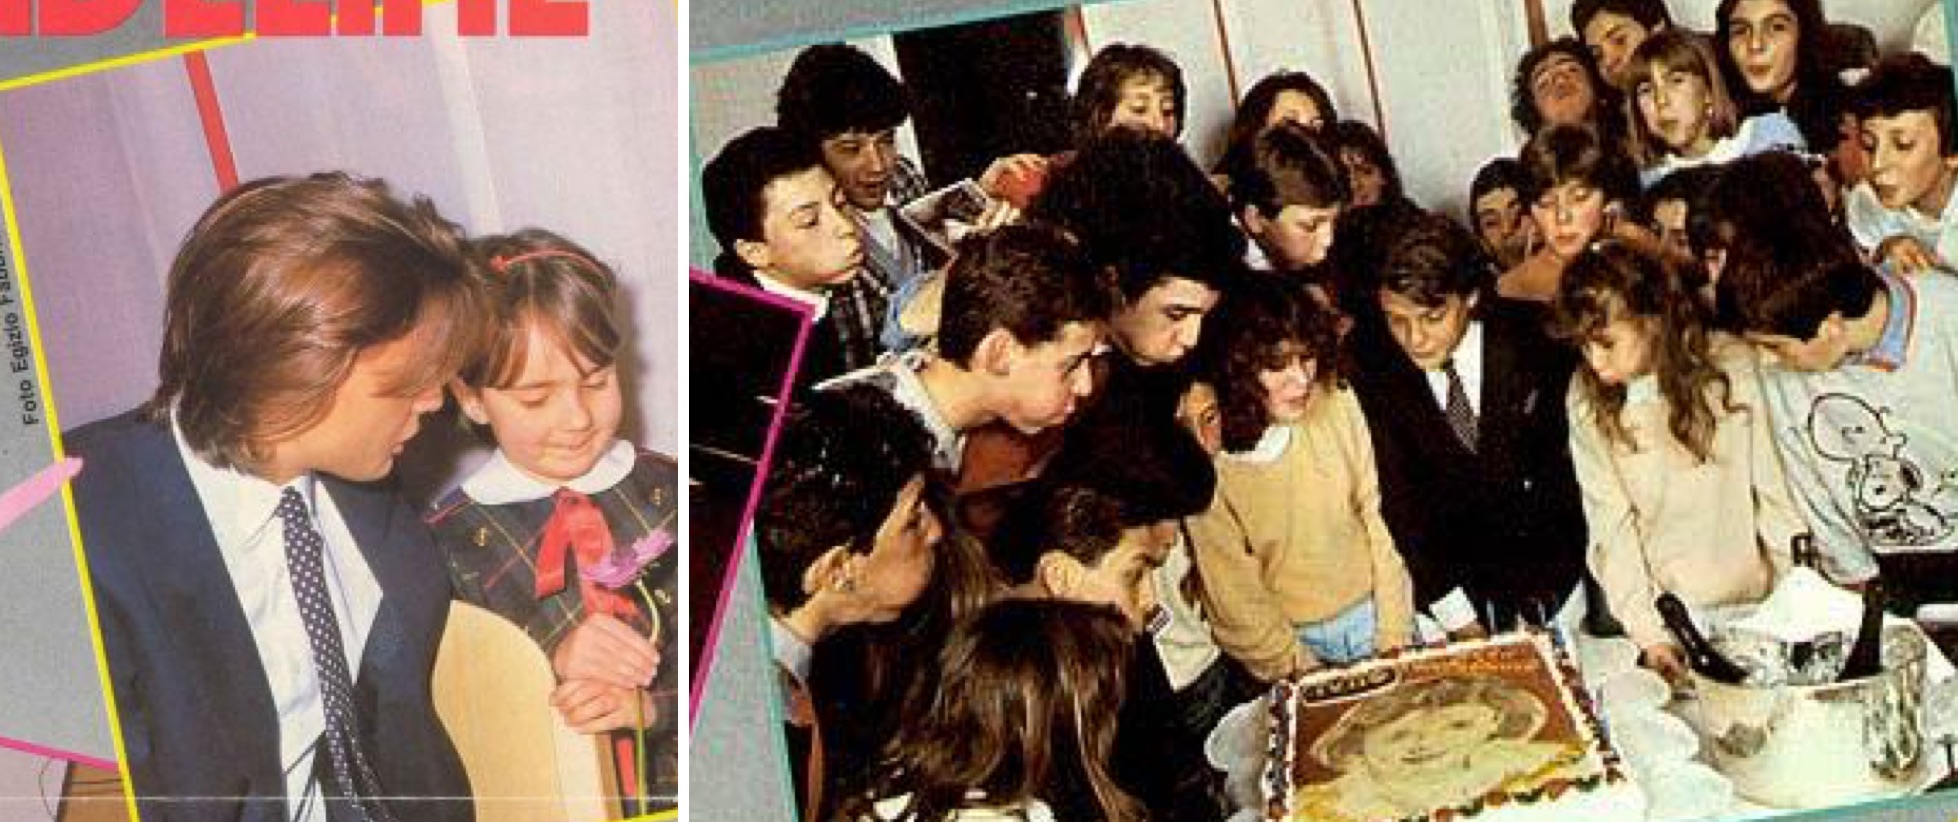 Izq.: Una niña le ofrece una flor a Luis Miguel. Der.: Soplando las velas con sus fans italianos. (Revista Tutto Musica & Spettacolo / LuisMiguelSite.com)